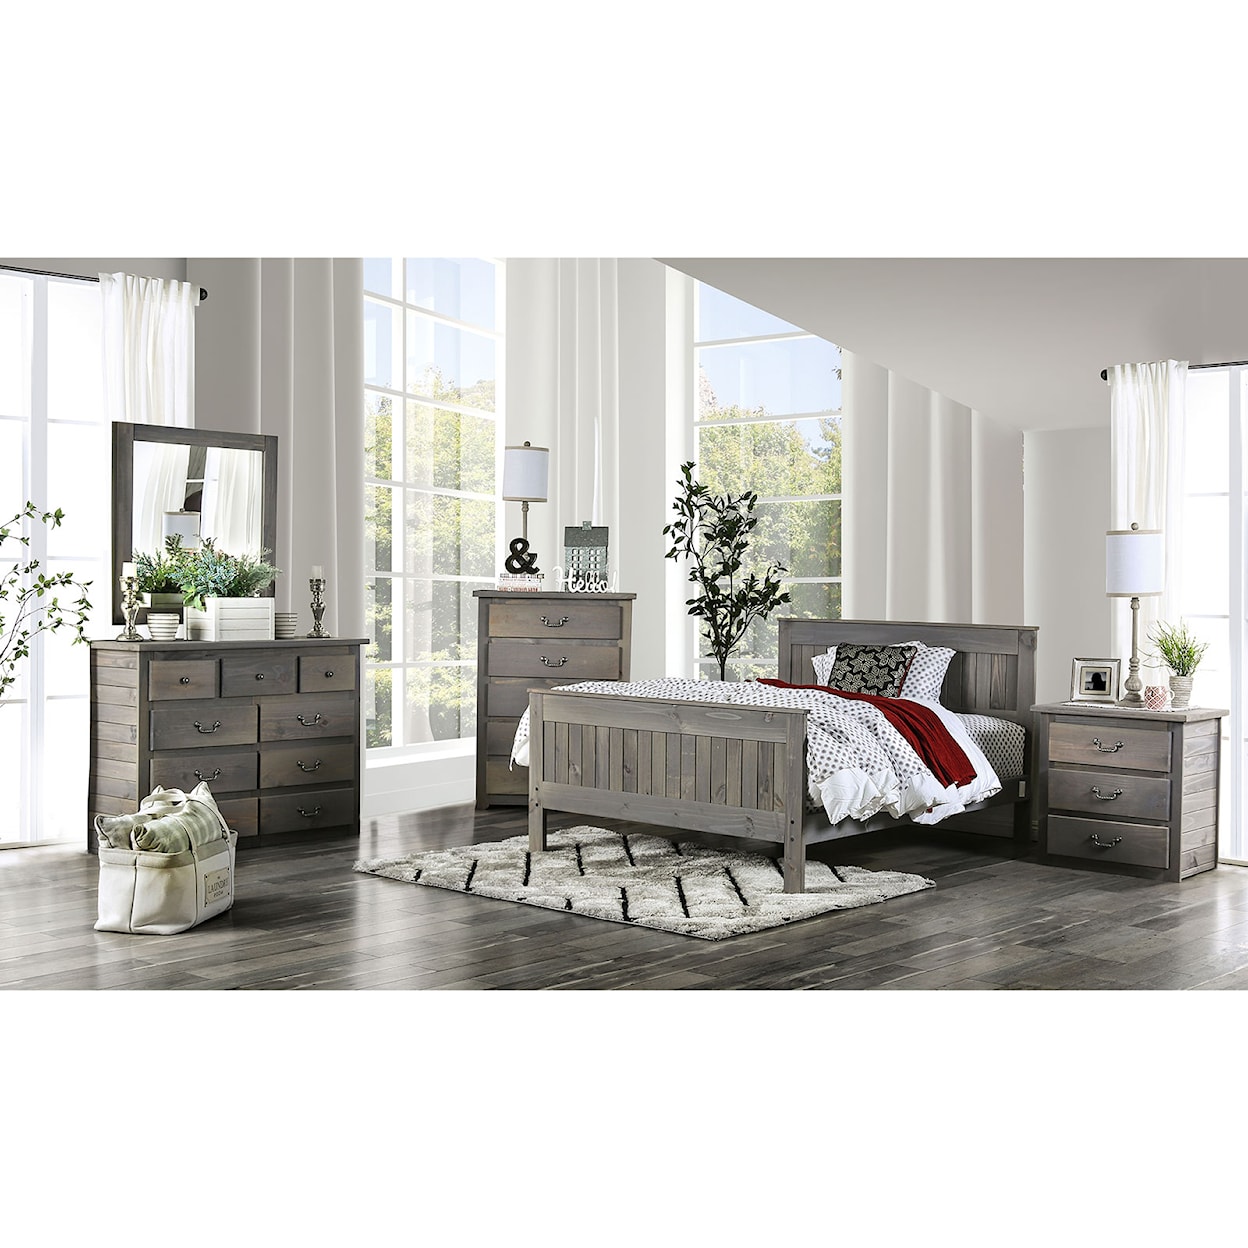 Furniture of America Rockwall 5-Piece Queen Bedroom Set